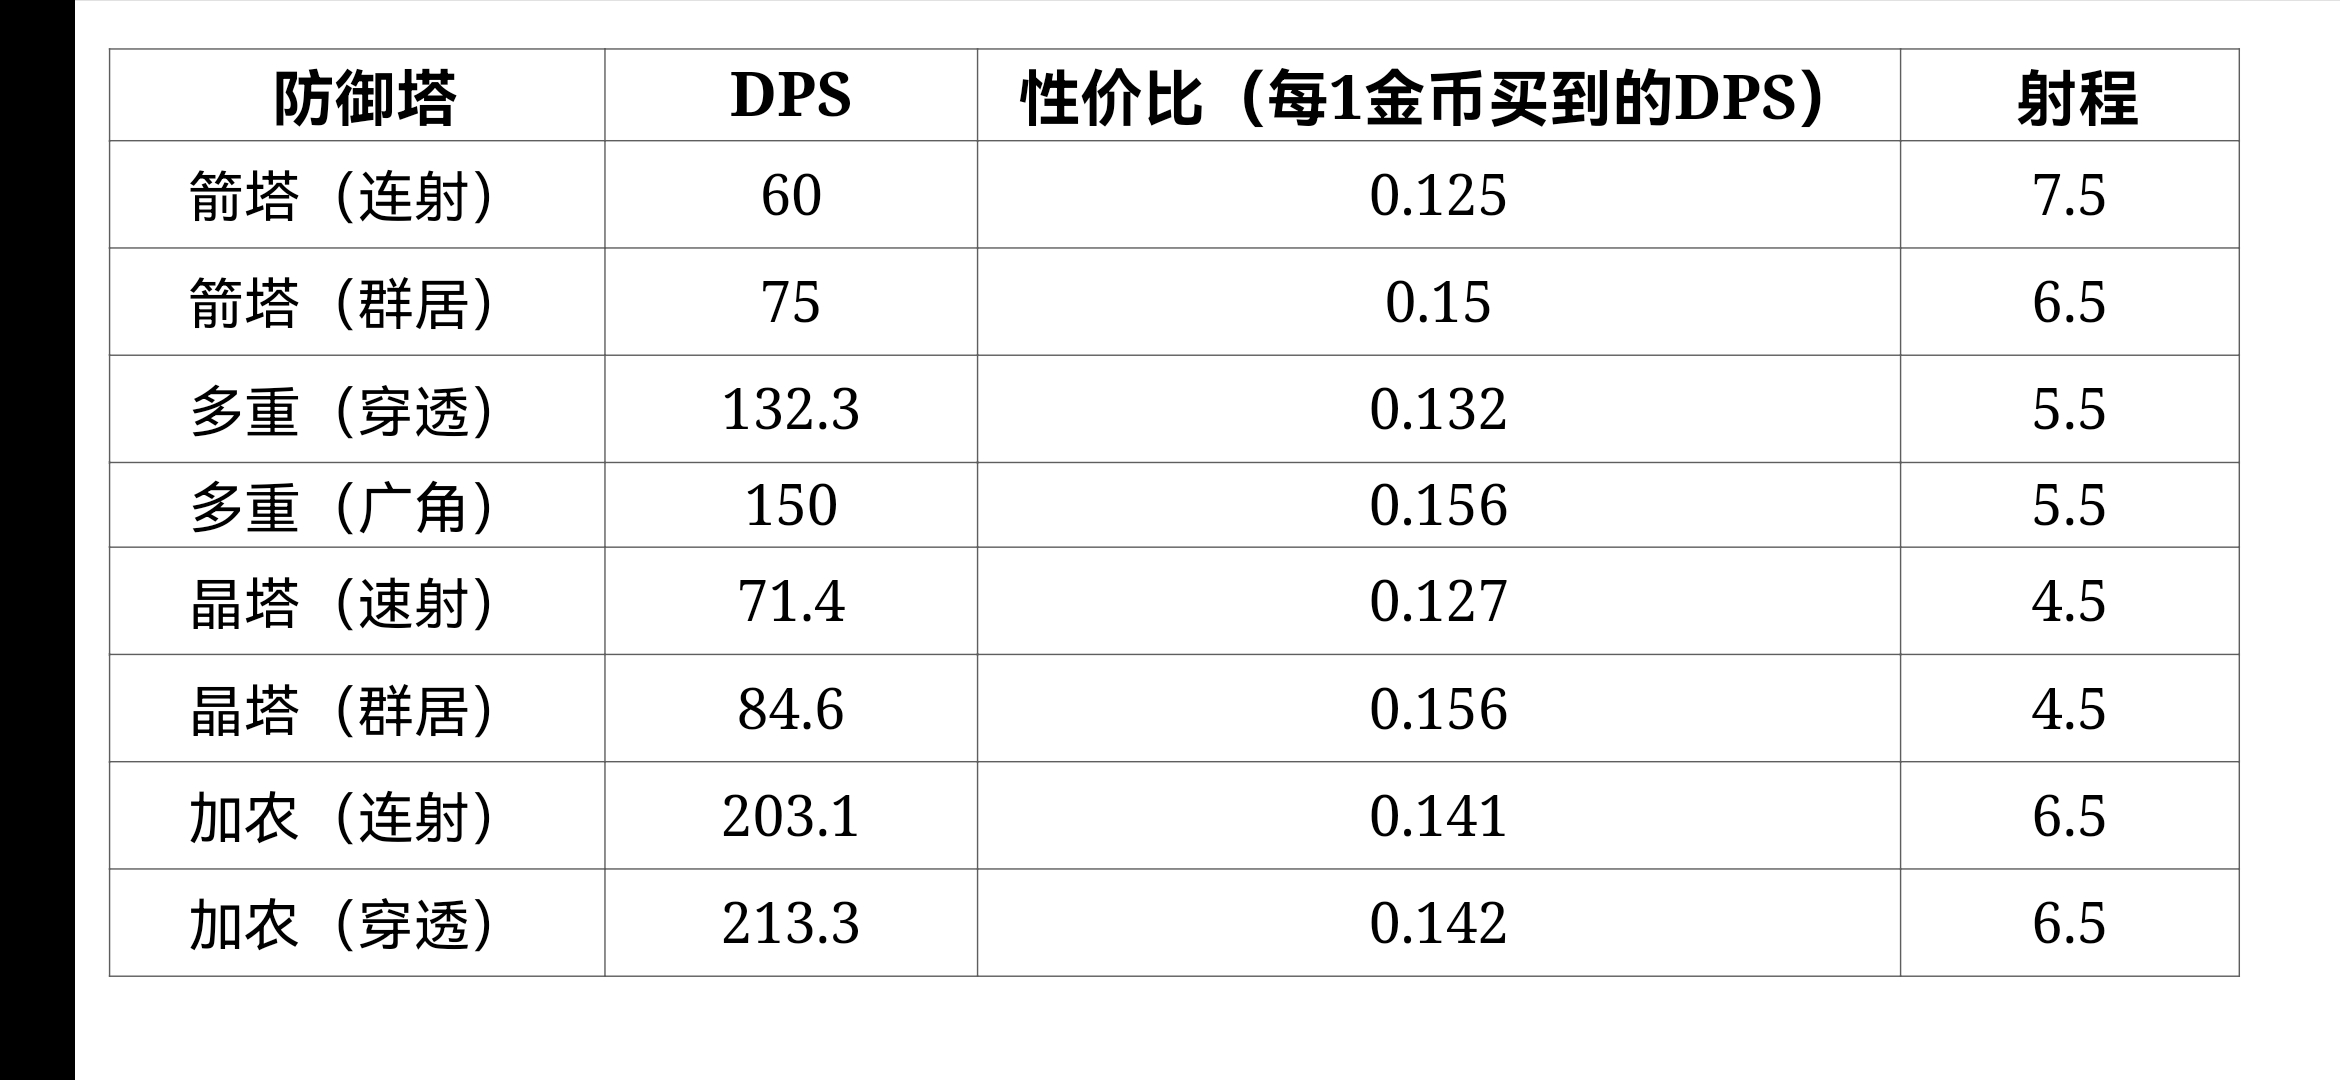 各主要防御塔DPS，性价比图